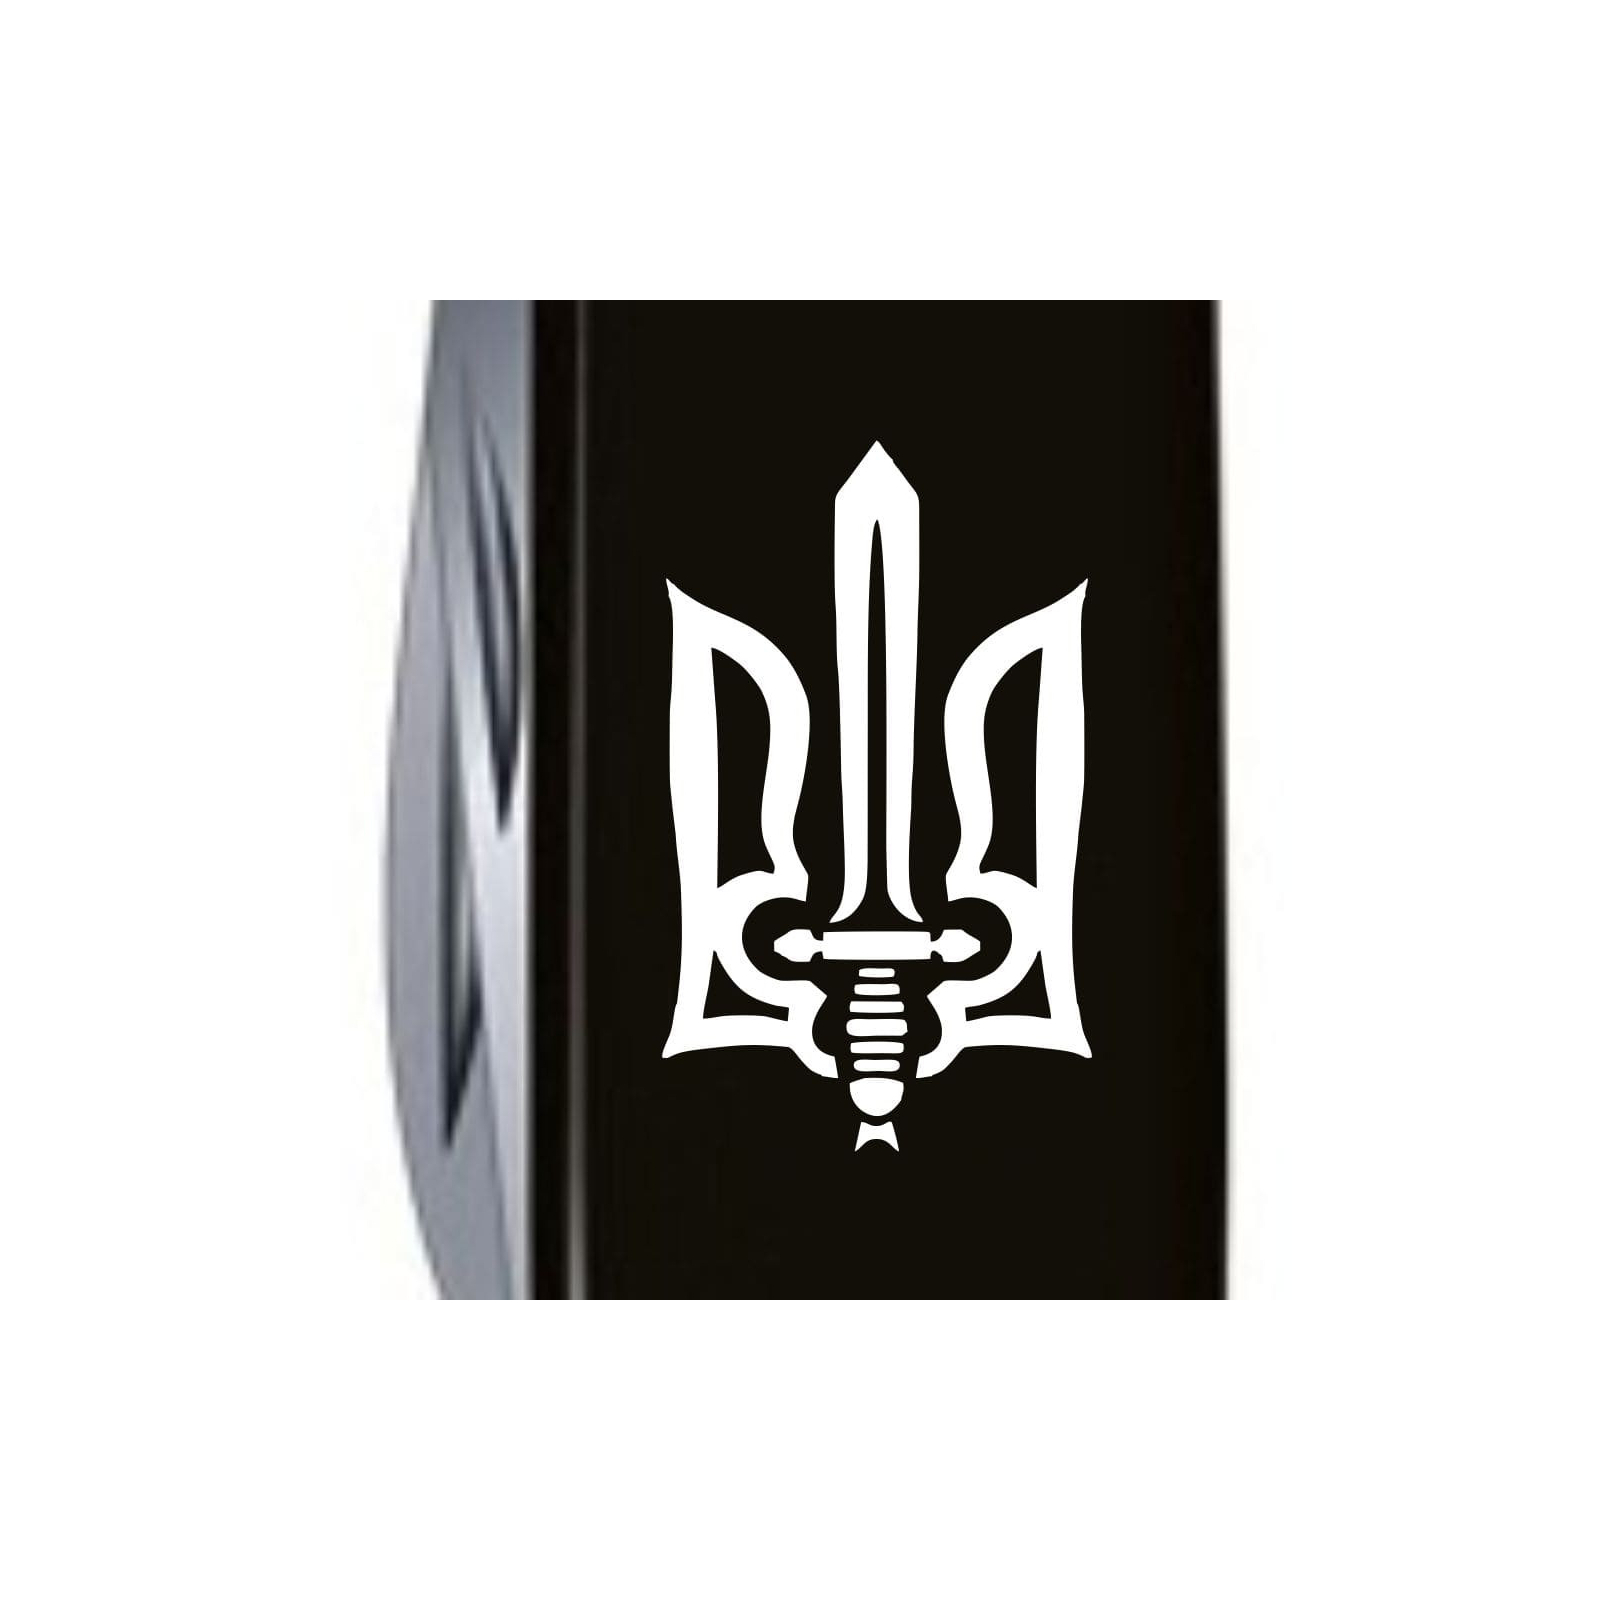 Нож Victorinox Huntsman Ukraine Black "Вогняний Тризуб" (1.3713.3_T0316u) изображение 5